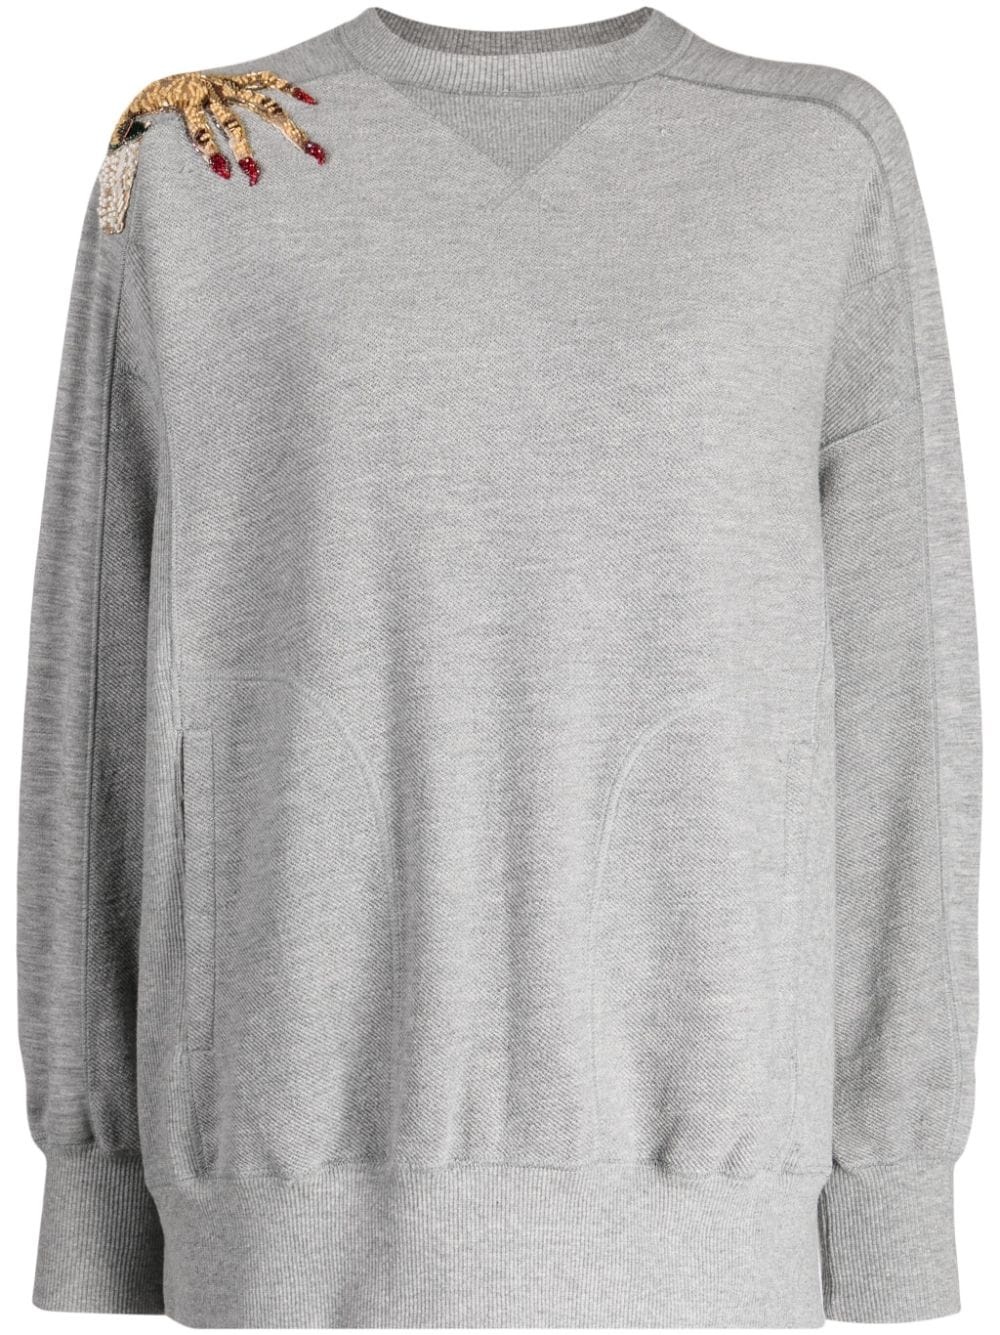 UNDERCOVER hand-appliquÃ© jersey sweatshirt | REVERSIBLE